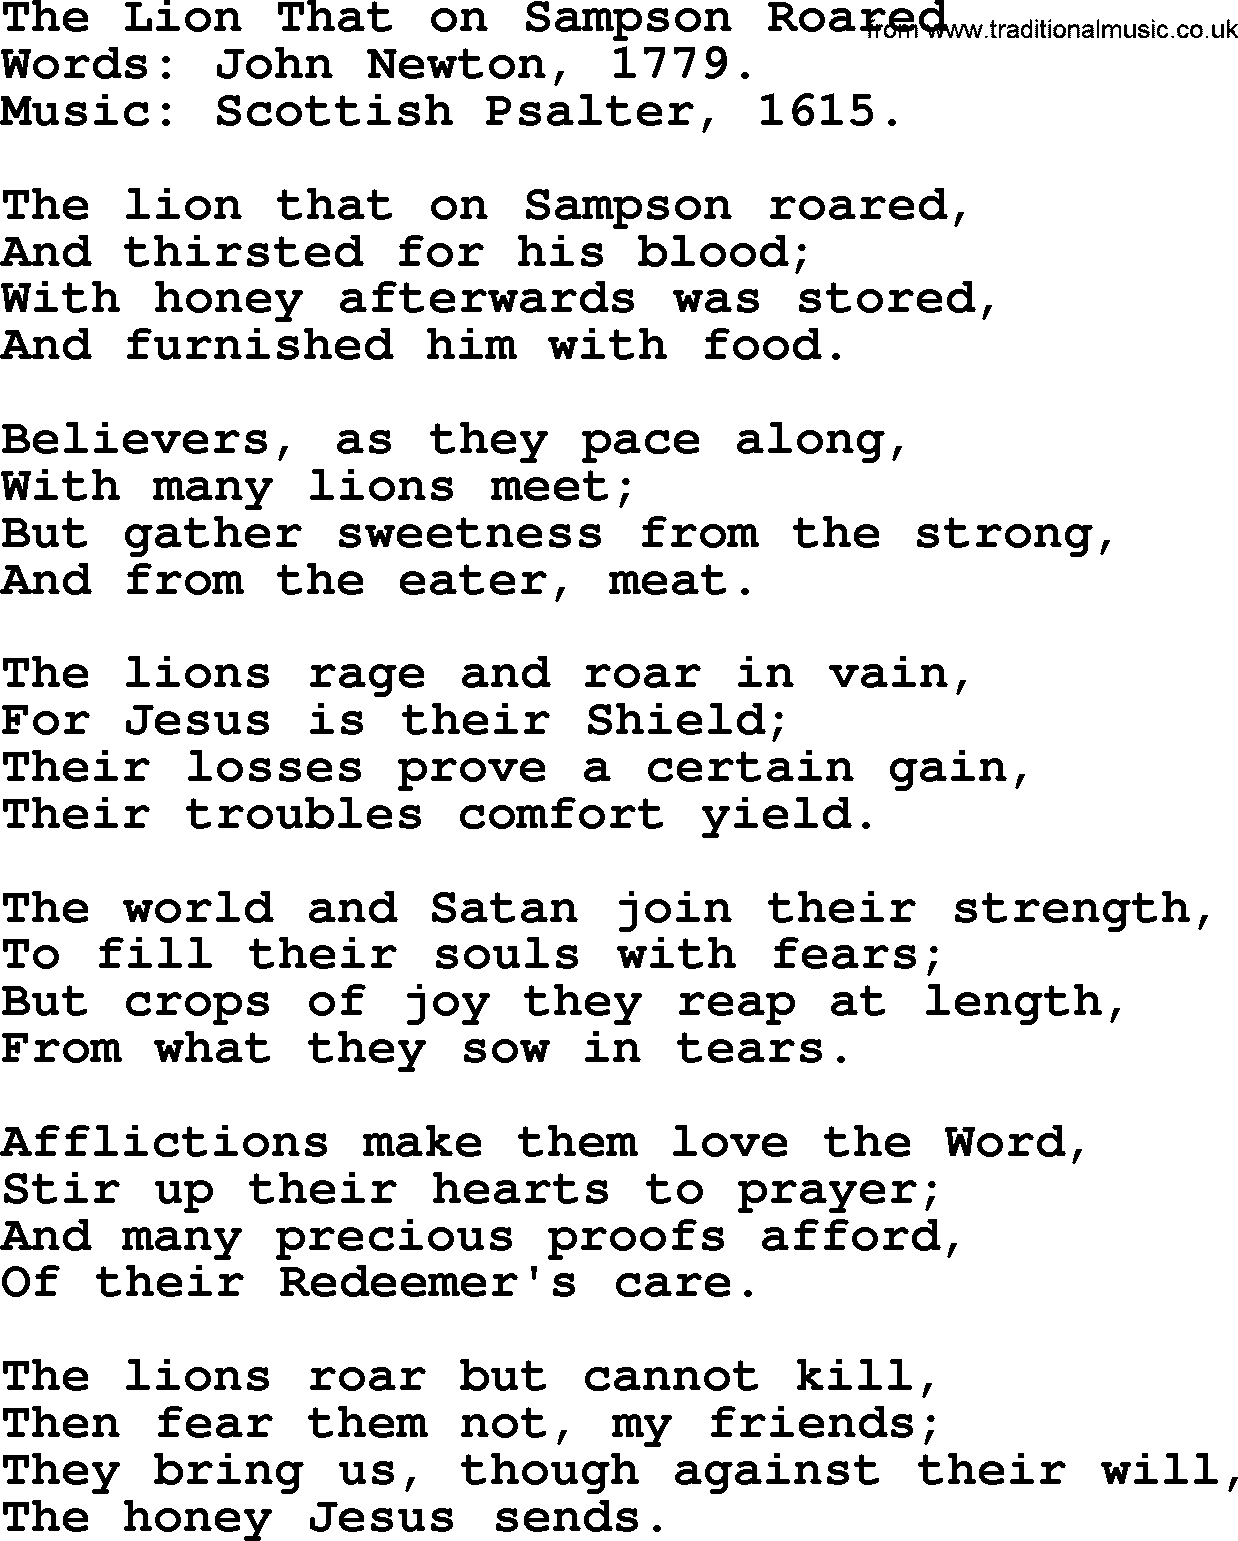 John Newton hymn: The Lion That On Sampson Roared, lyrics